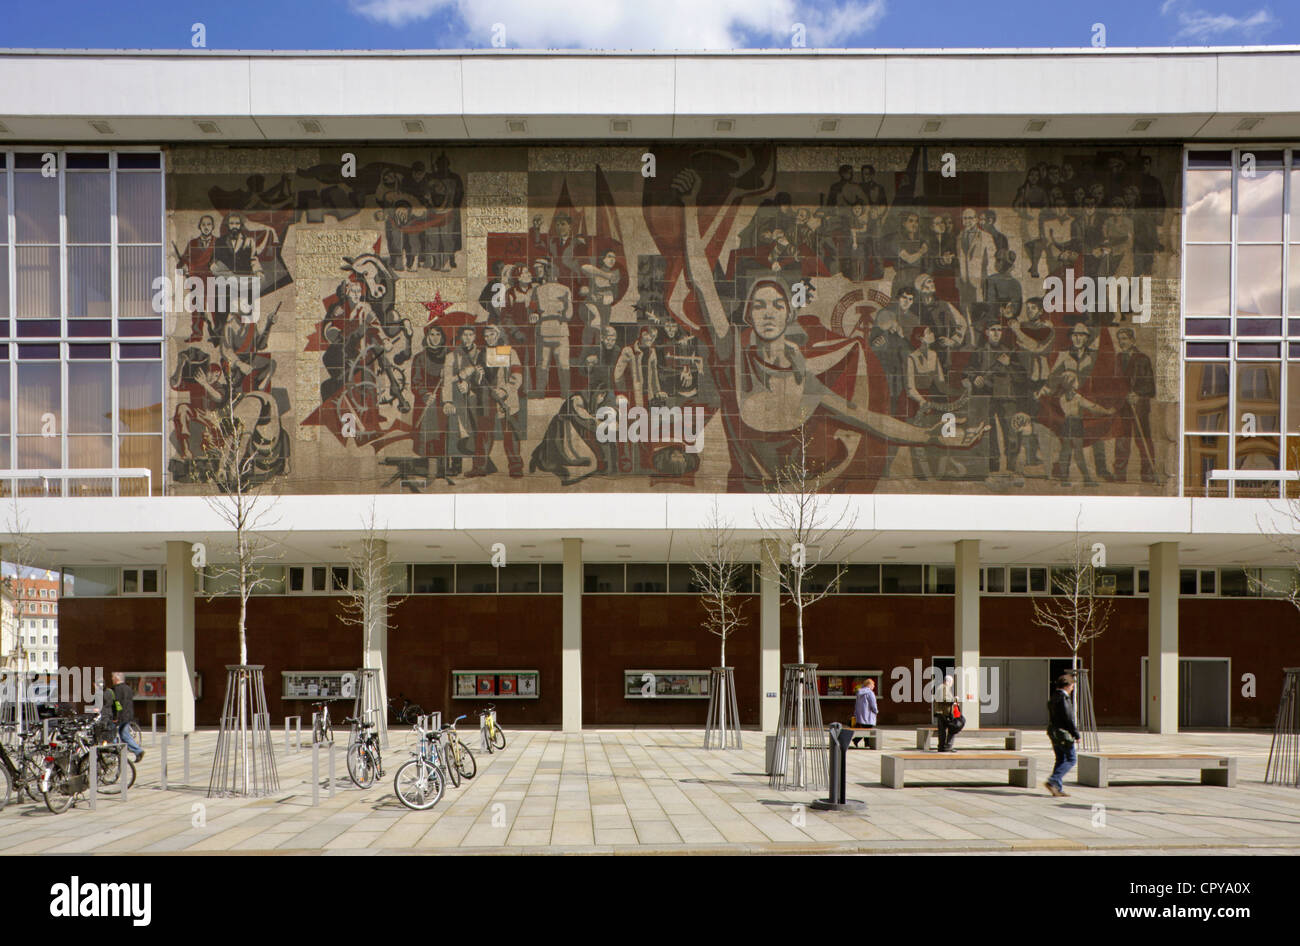 Grande realismo socialista mosaico su il Soviet-costruito Palazzo della Cultura o Kulturpalast, Dresda, Sassonia, Germania. Foto Stock